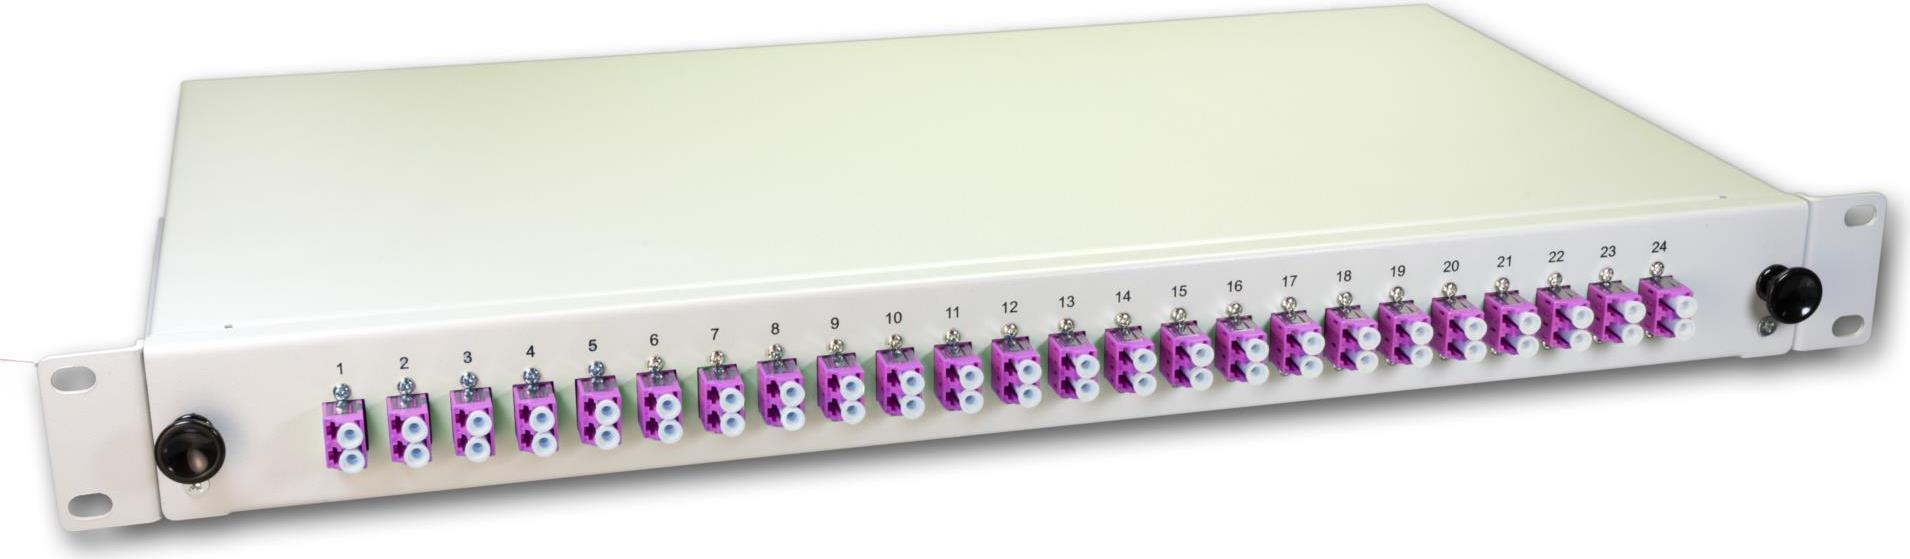 Lightwin LWL Spleissbox, 48 Fasern, 24x DLC Multimode, 50/125µm OM4 Pigtail Spleißboxen (SPBOX 48G50 OM4 DLC)